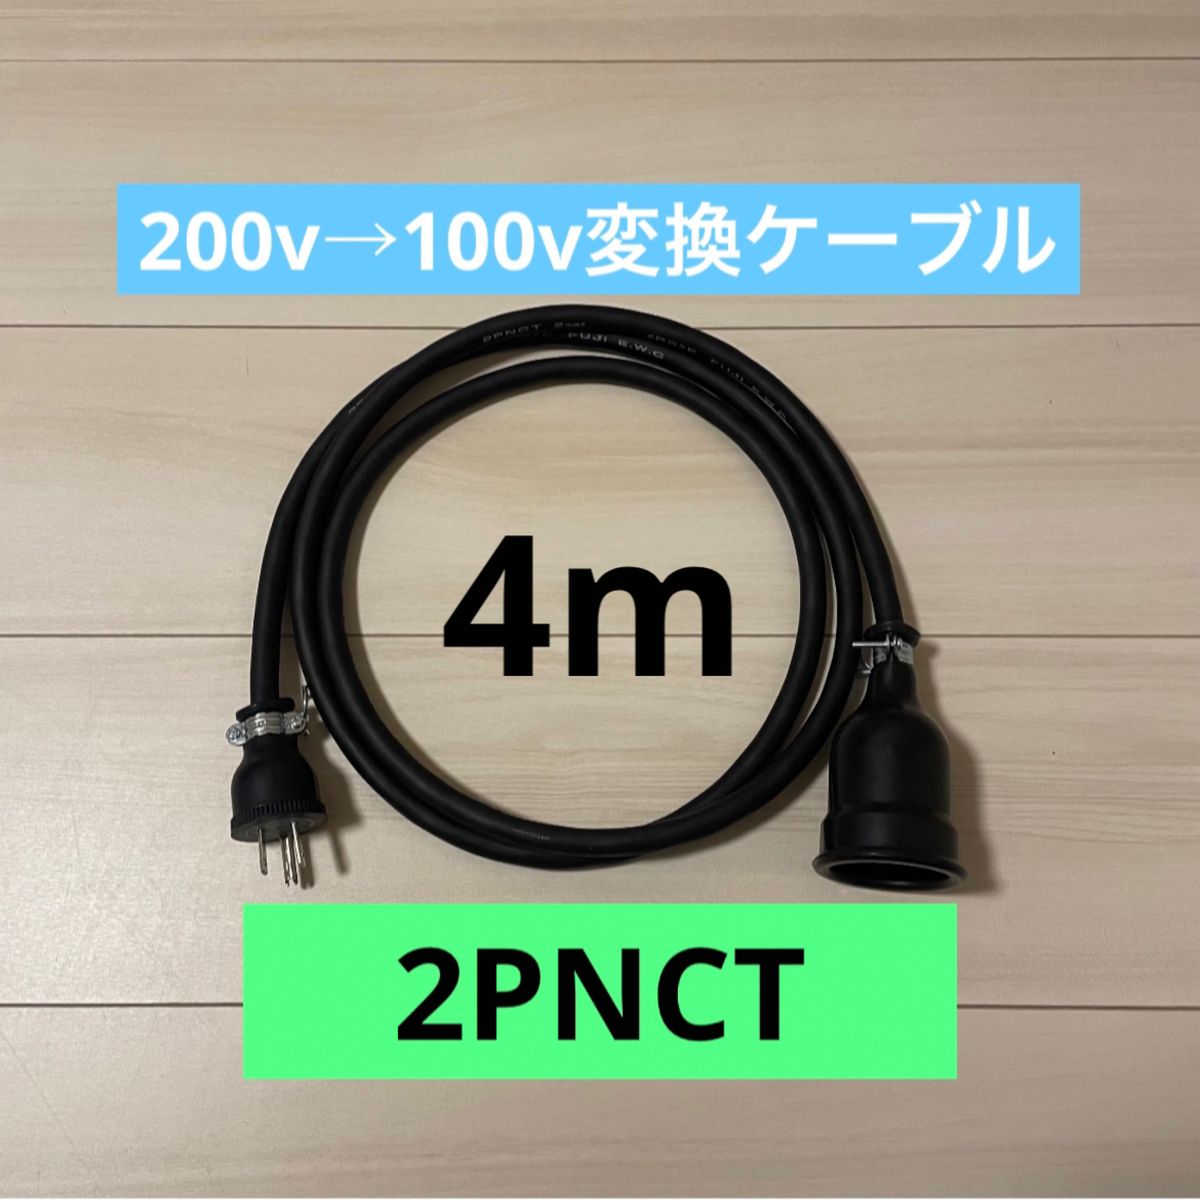 電気自動車コンセント★200V→100V変換充電器延長ケーブル4m 2PNCT